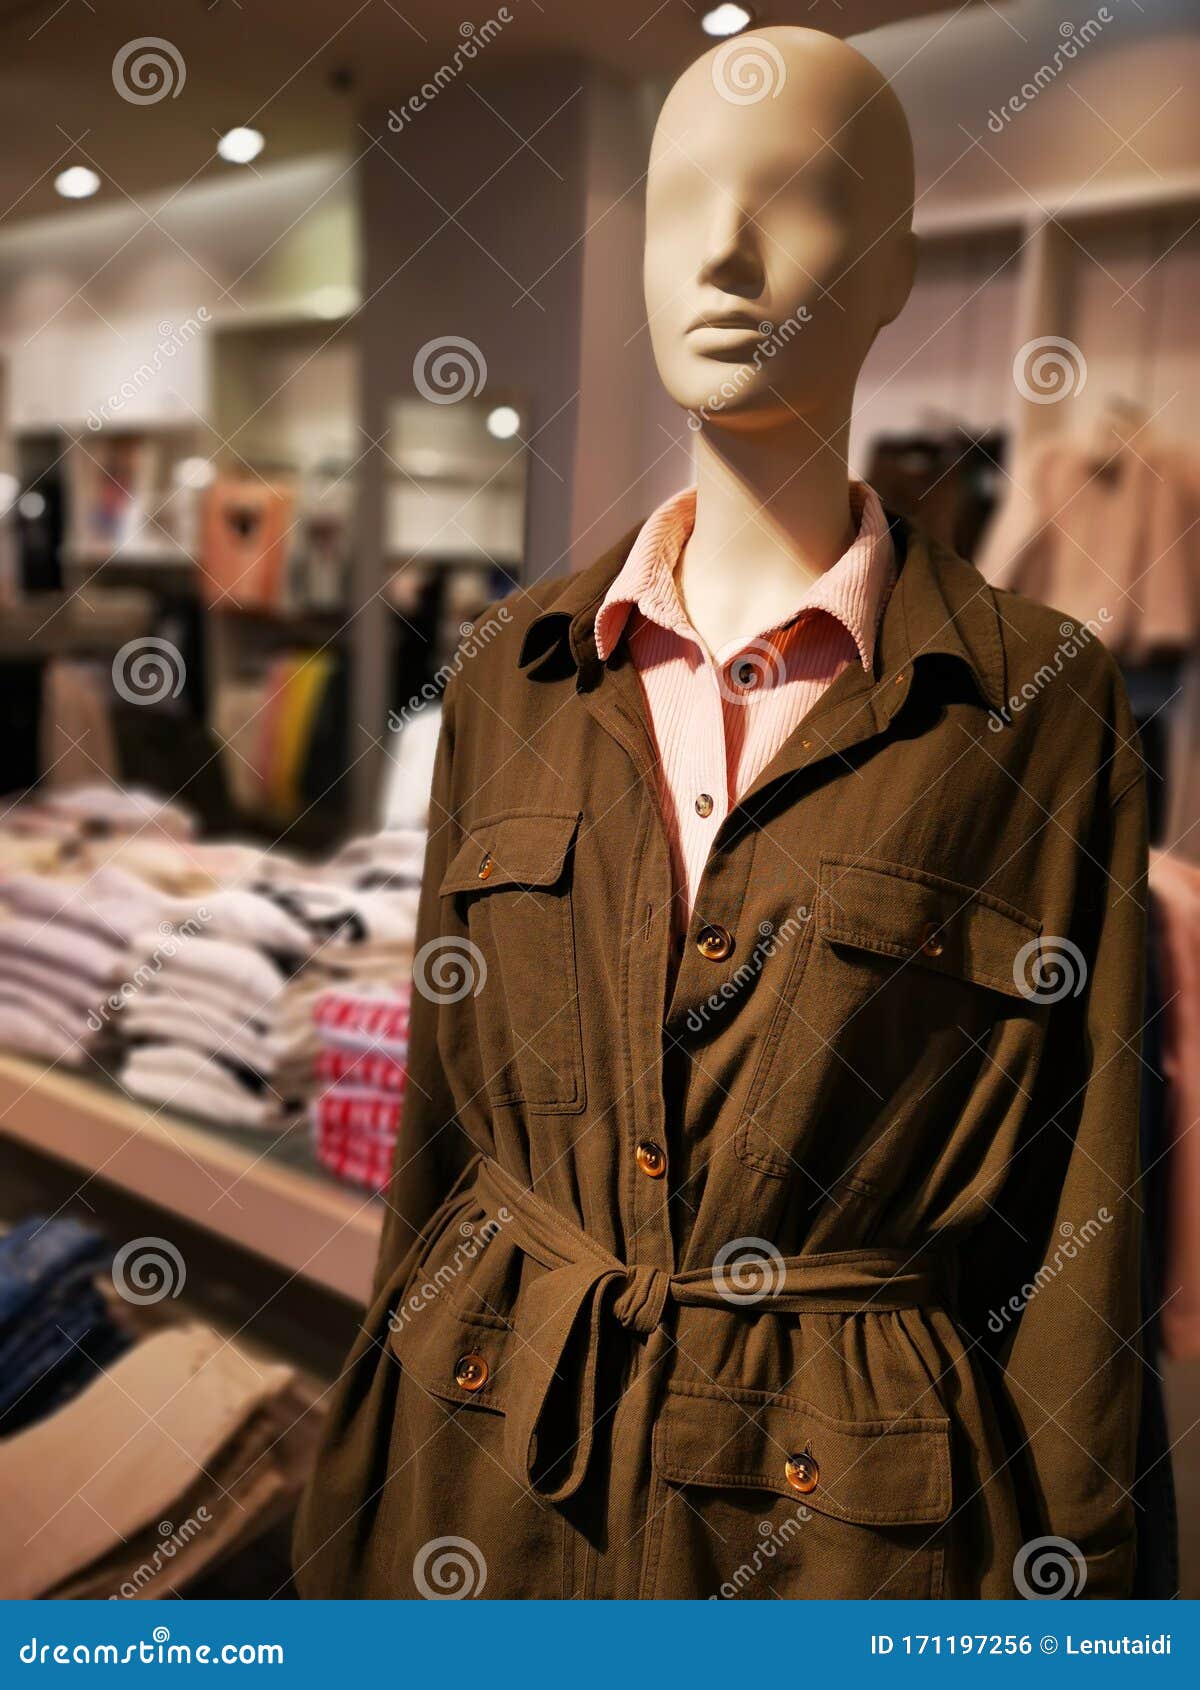 Fashion Dummy Clothing For Women Stock Photo Image Of Modern